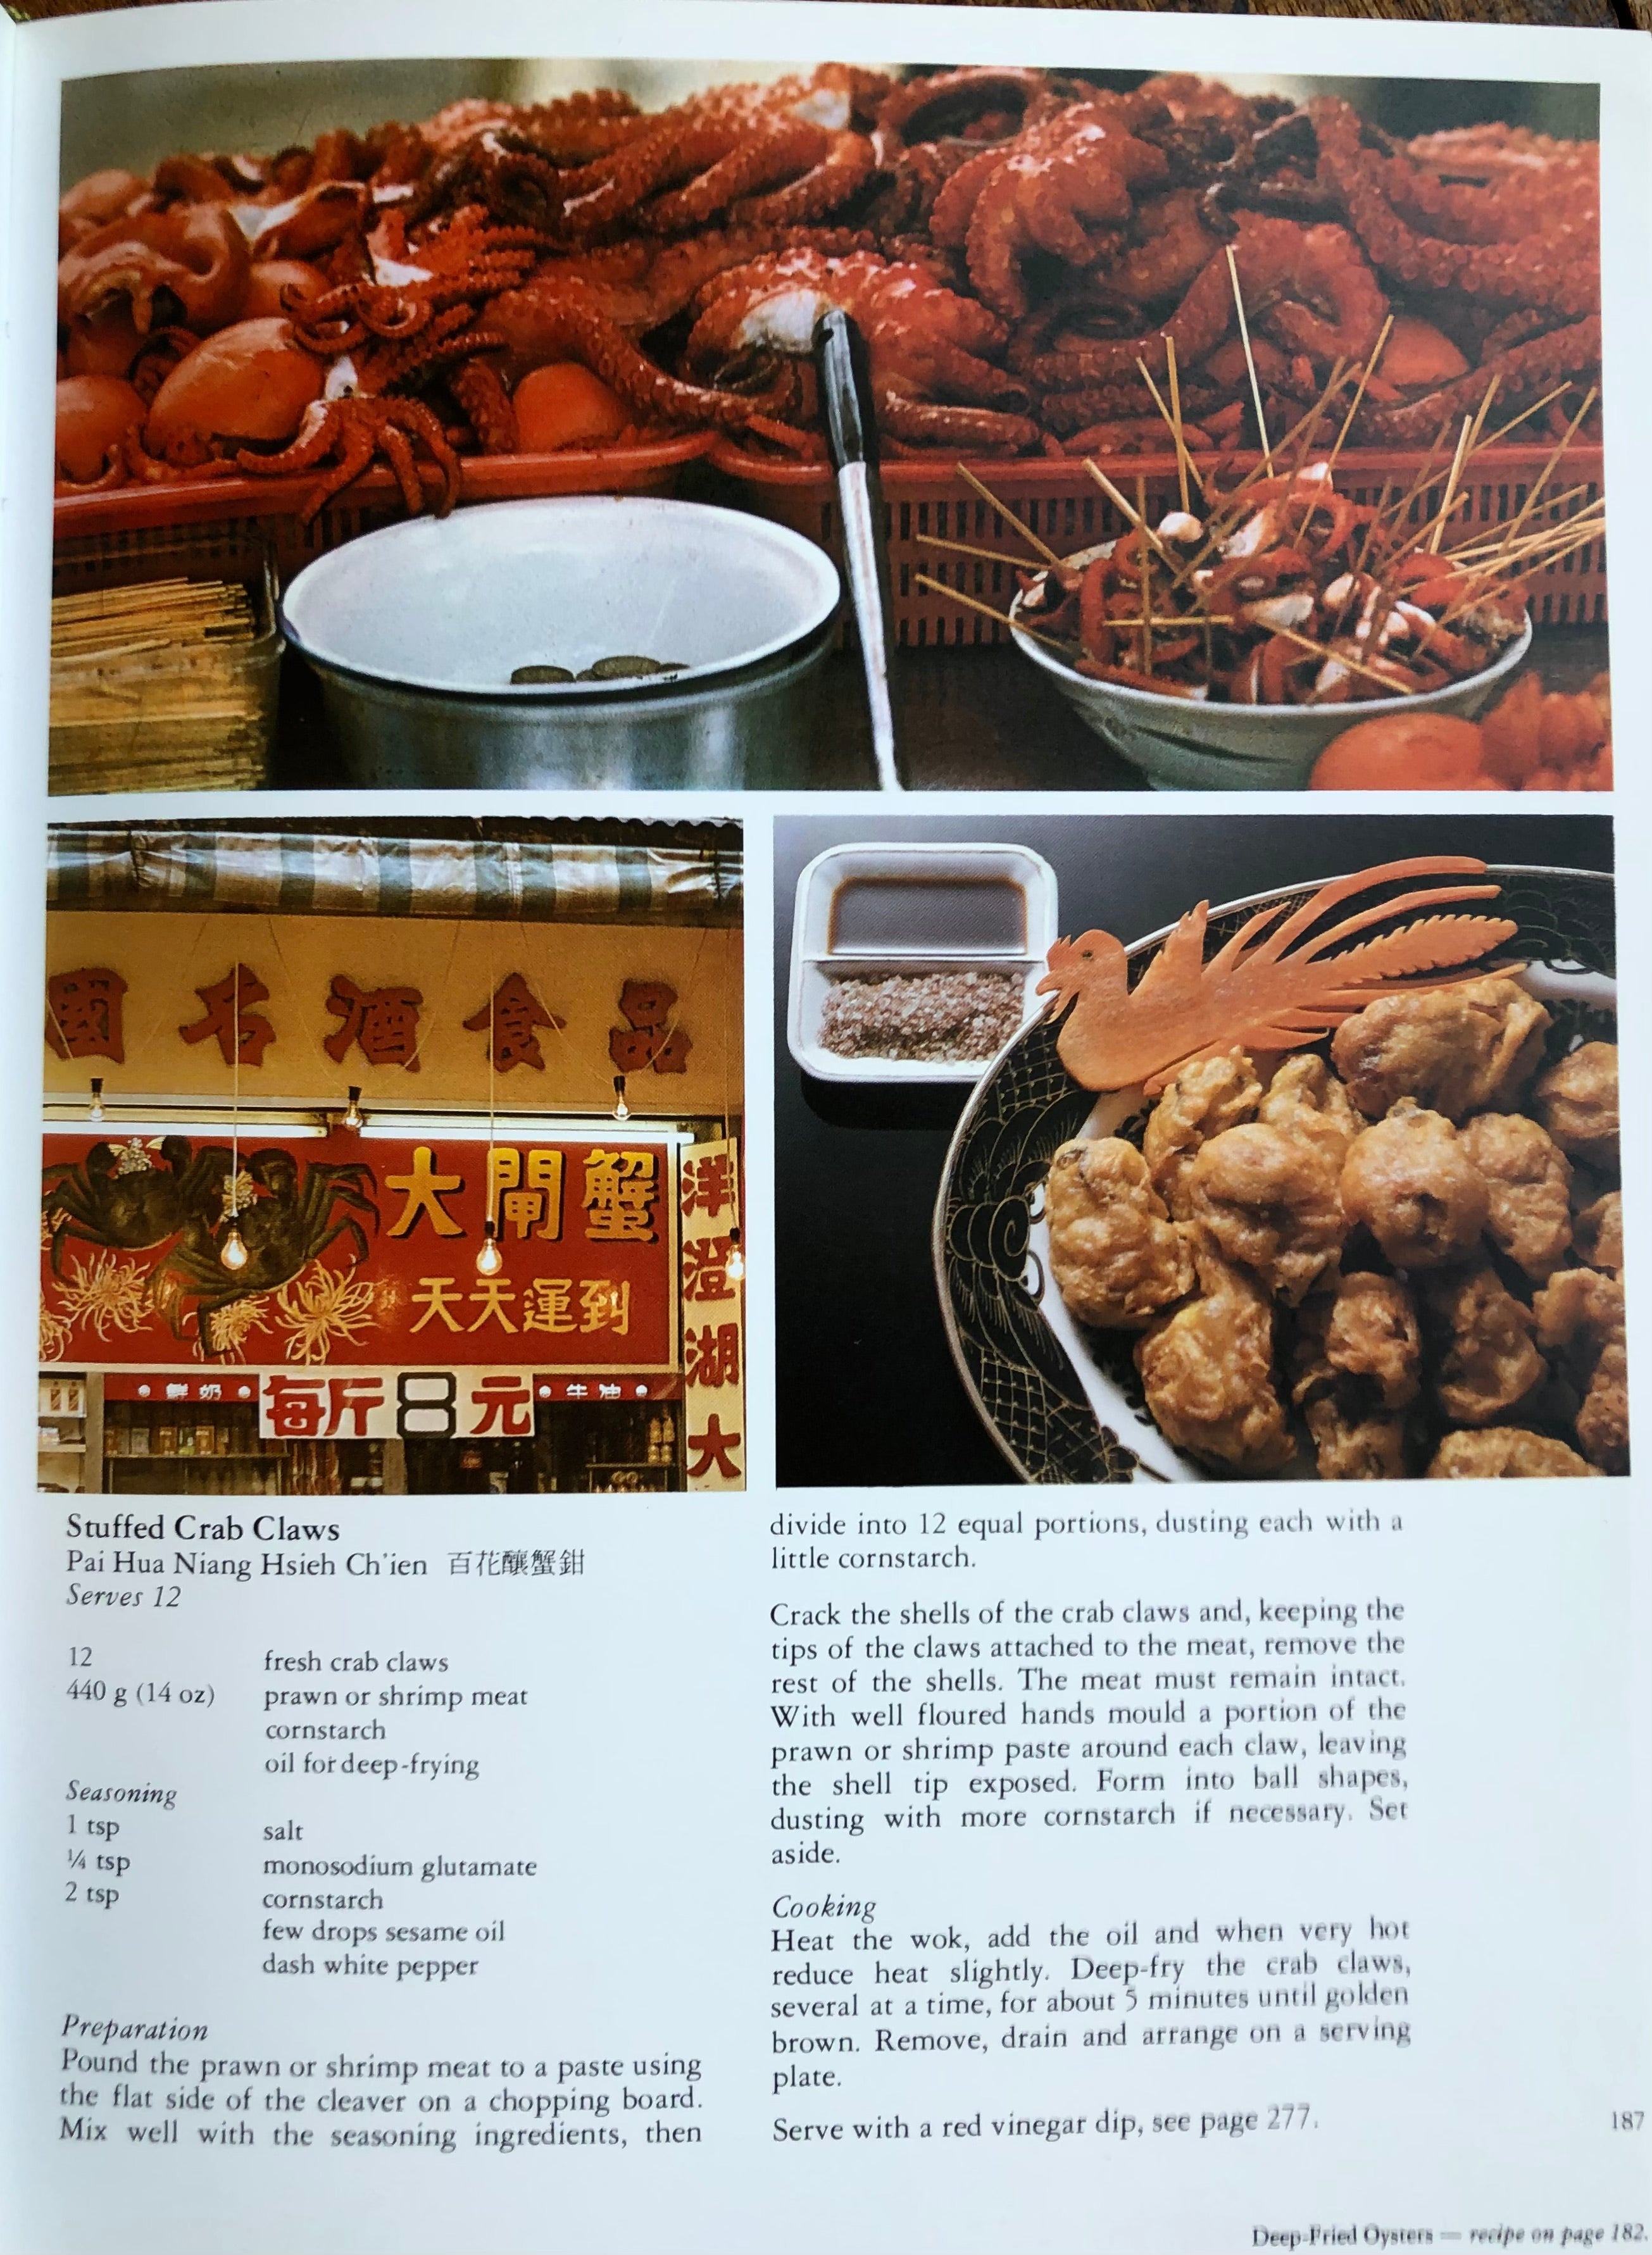 (*NEW ARRIVAL*) (Chinese) David Perkins, ed. Hong Kong & China Gas Chinese Cookbook.